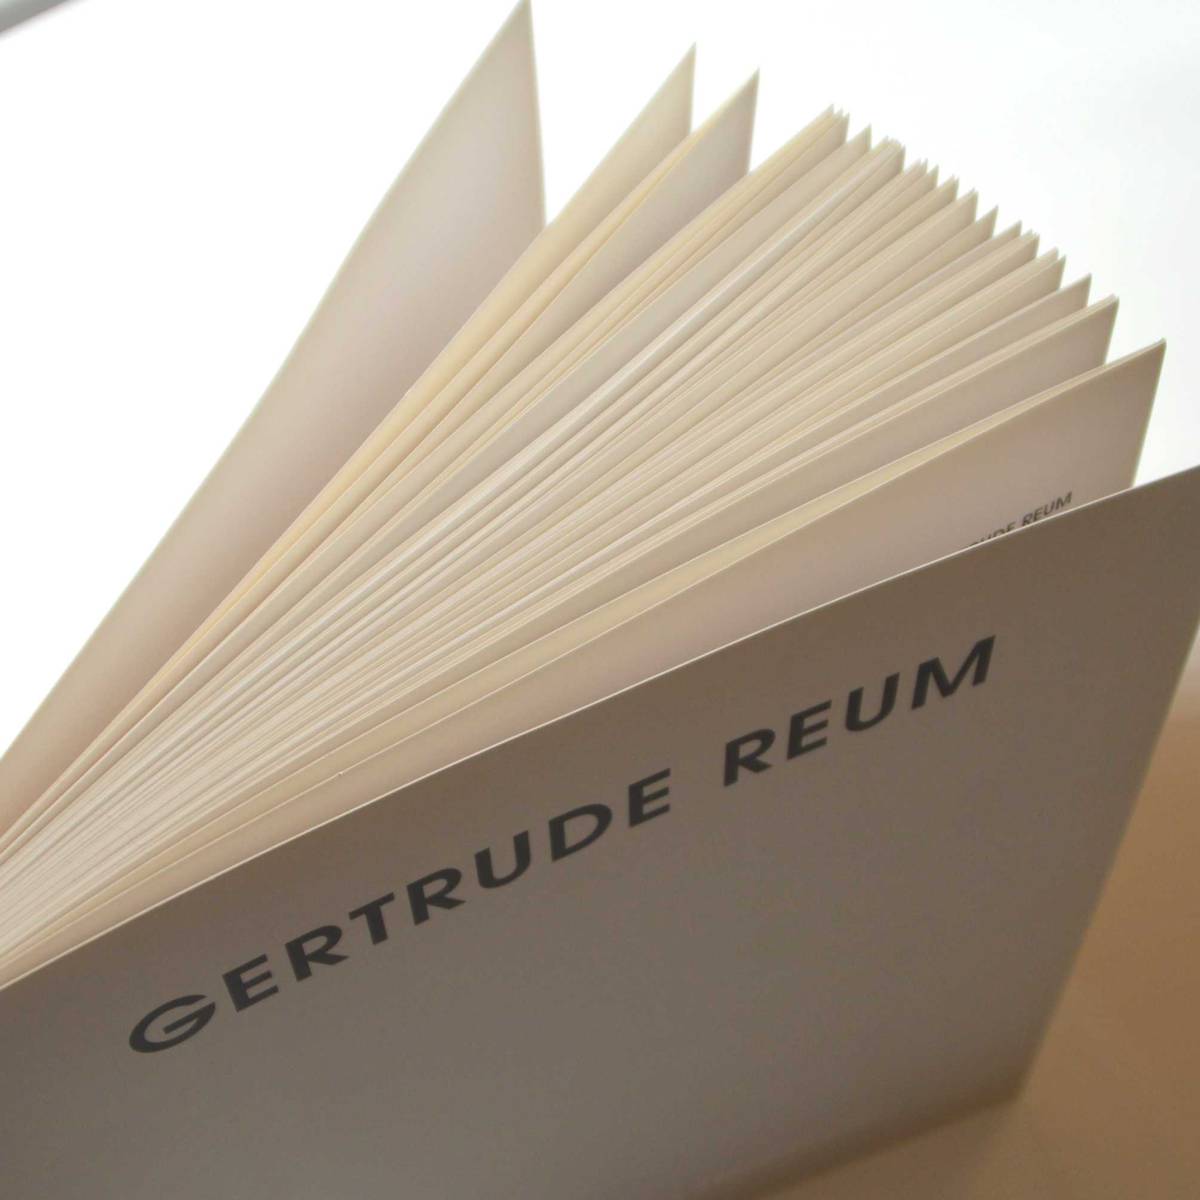 Gertrude Reum - Zellstoffreliefs, Lackbilder, Metallarbeiten